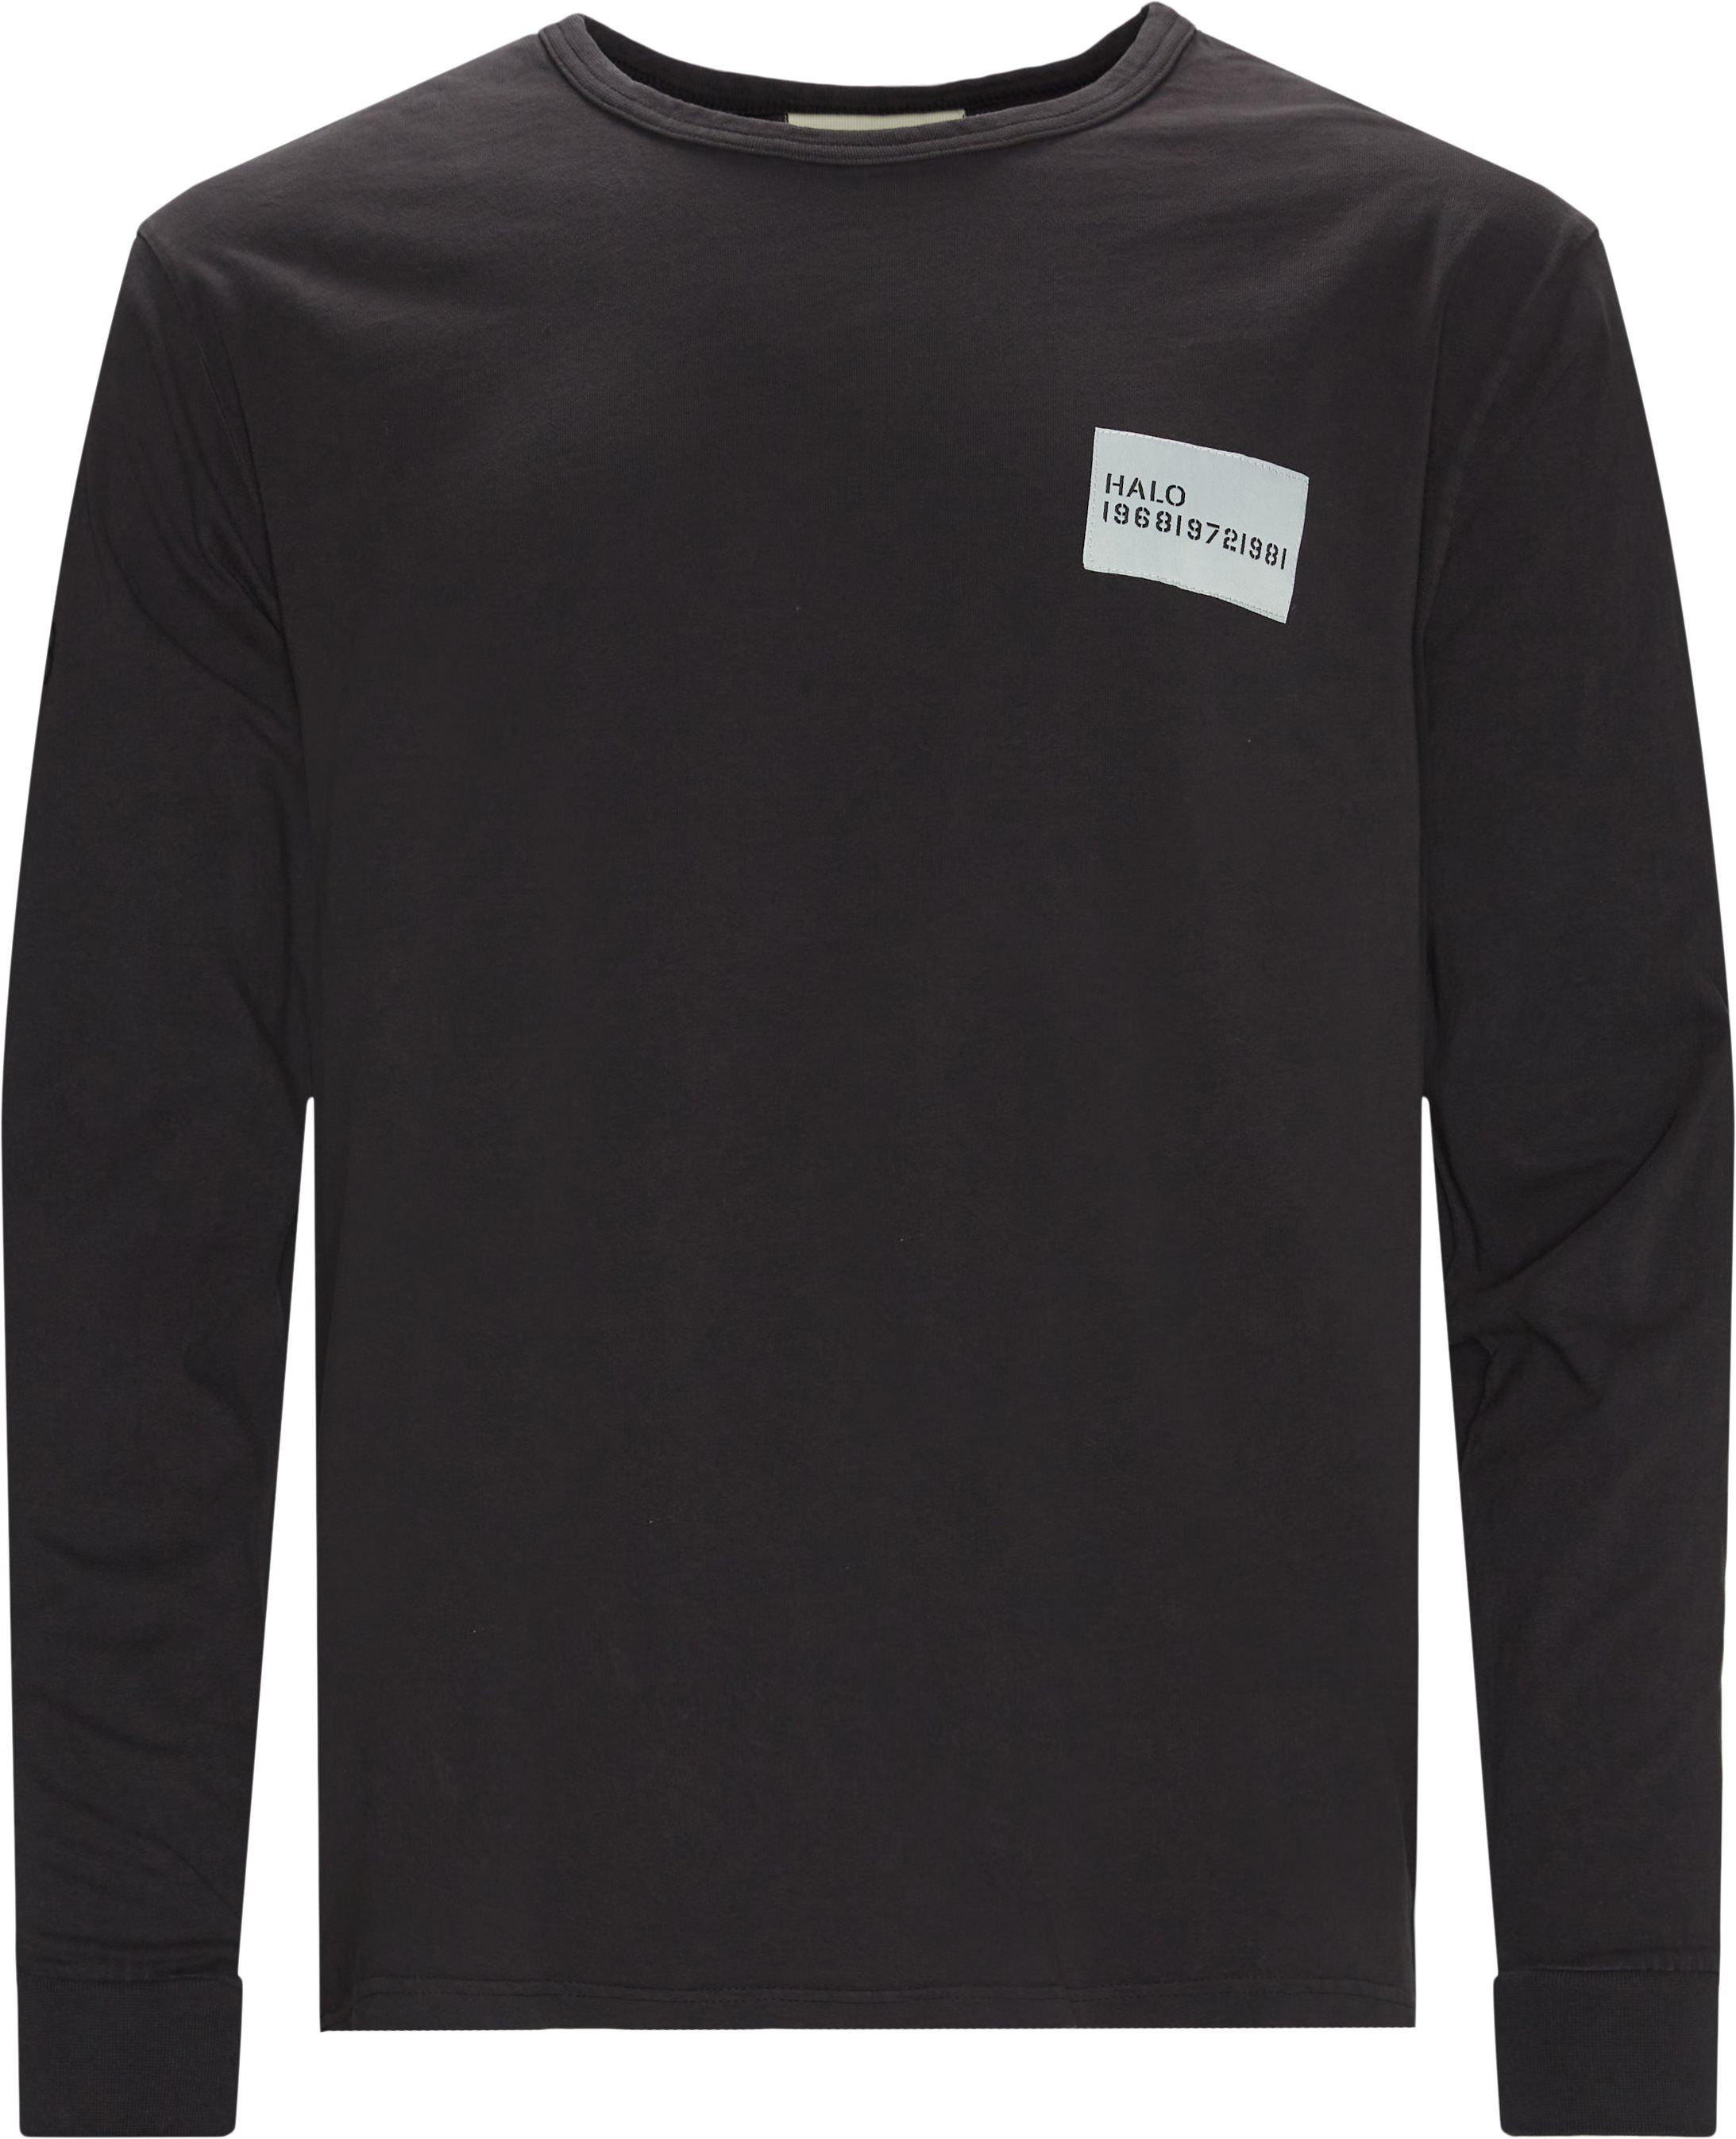 Heavy Cotton L/æ Tee - T-shirts - Regular fit - Black